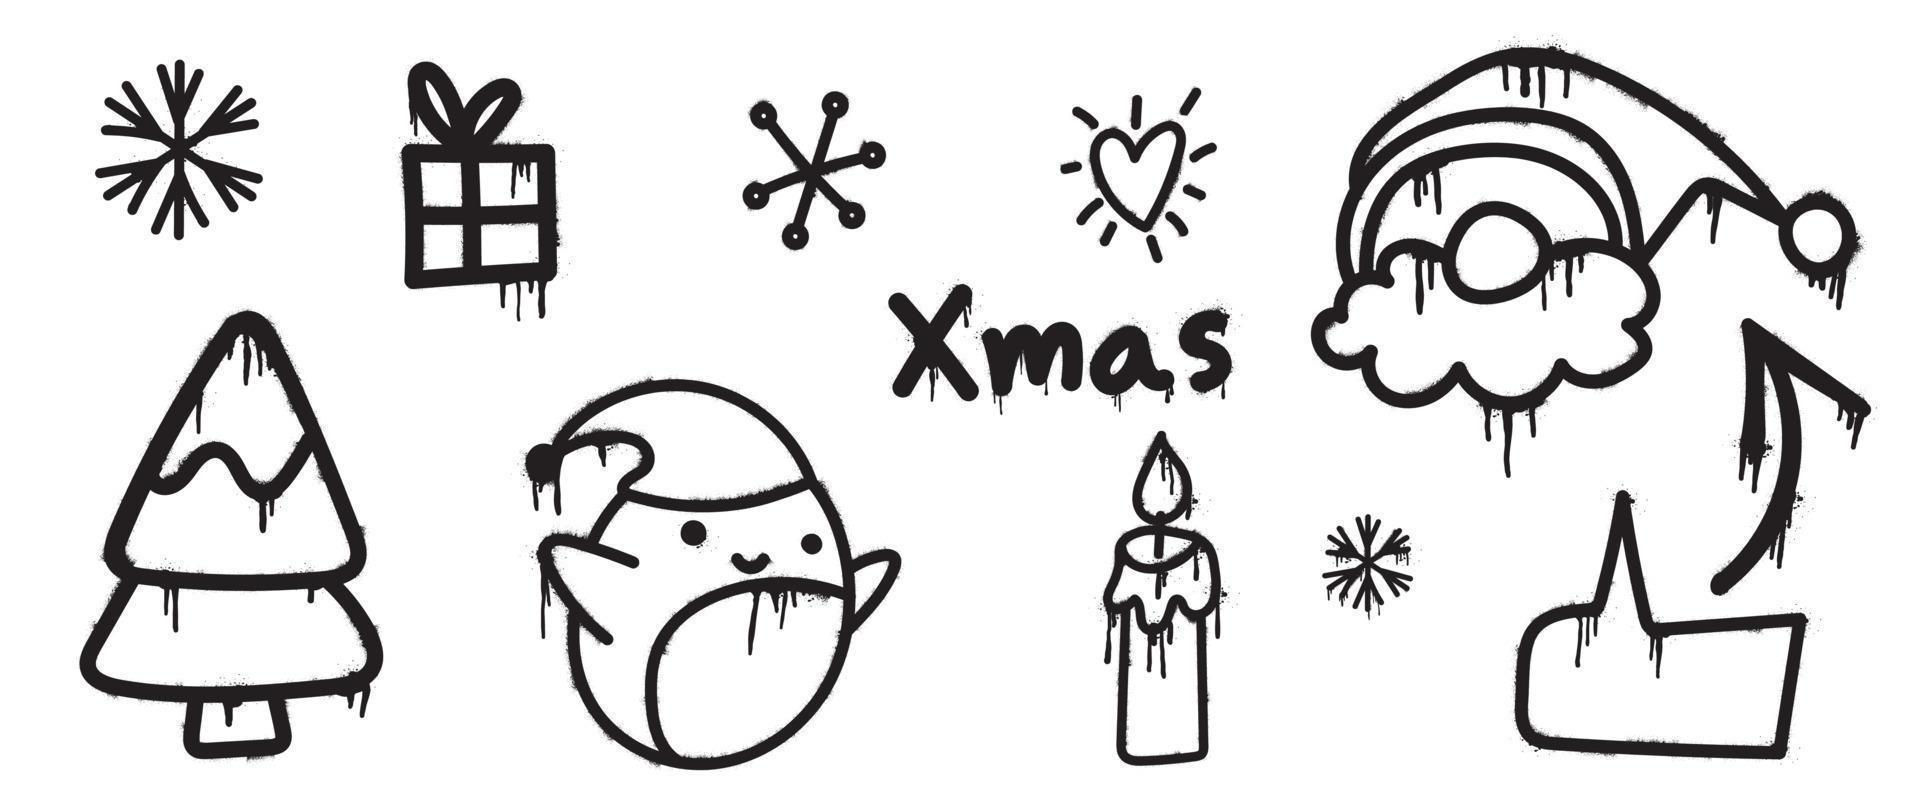 uppsättning av jul element svart spray måla vektor. graffiti, grunge element av snöflinga, tomte, pingvin, träd, ljus ljus på vit bakgrund. design illustration för dekoration, kort, klistermärke. vektor